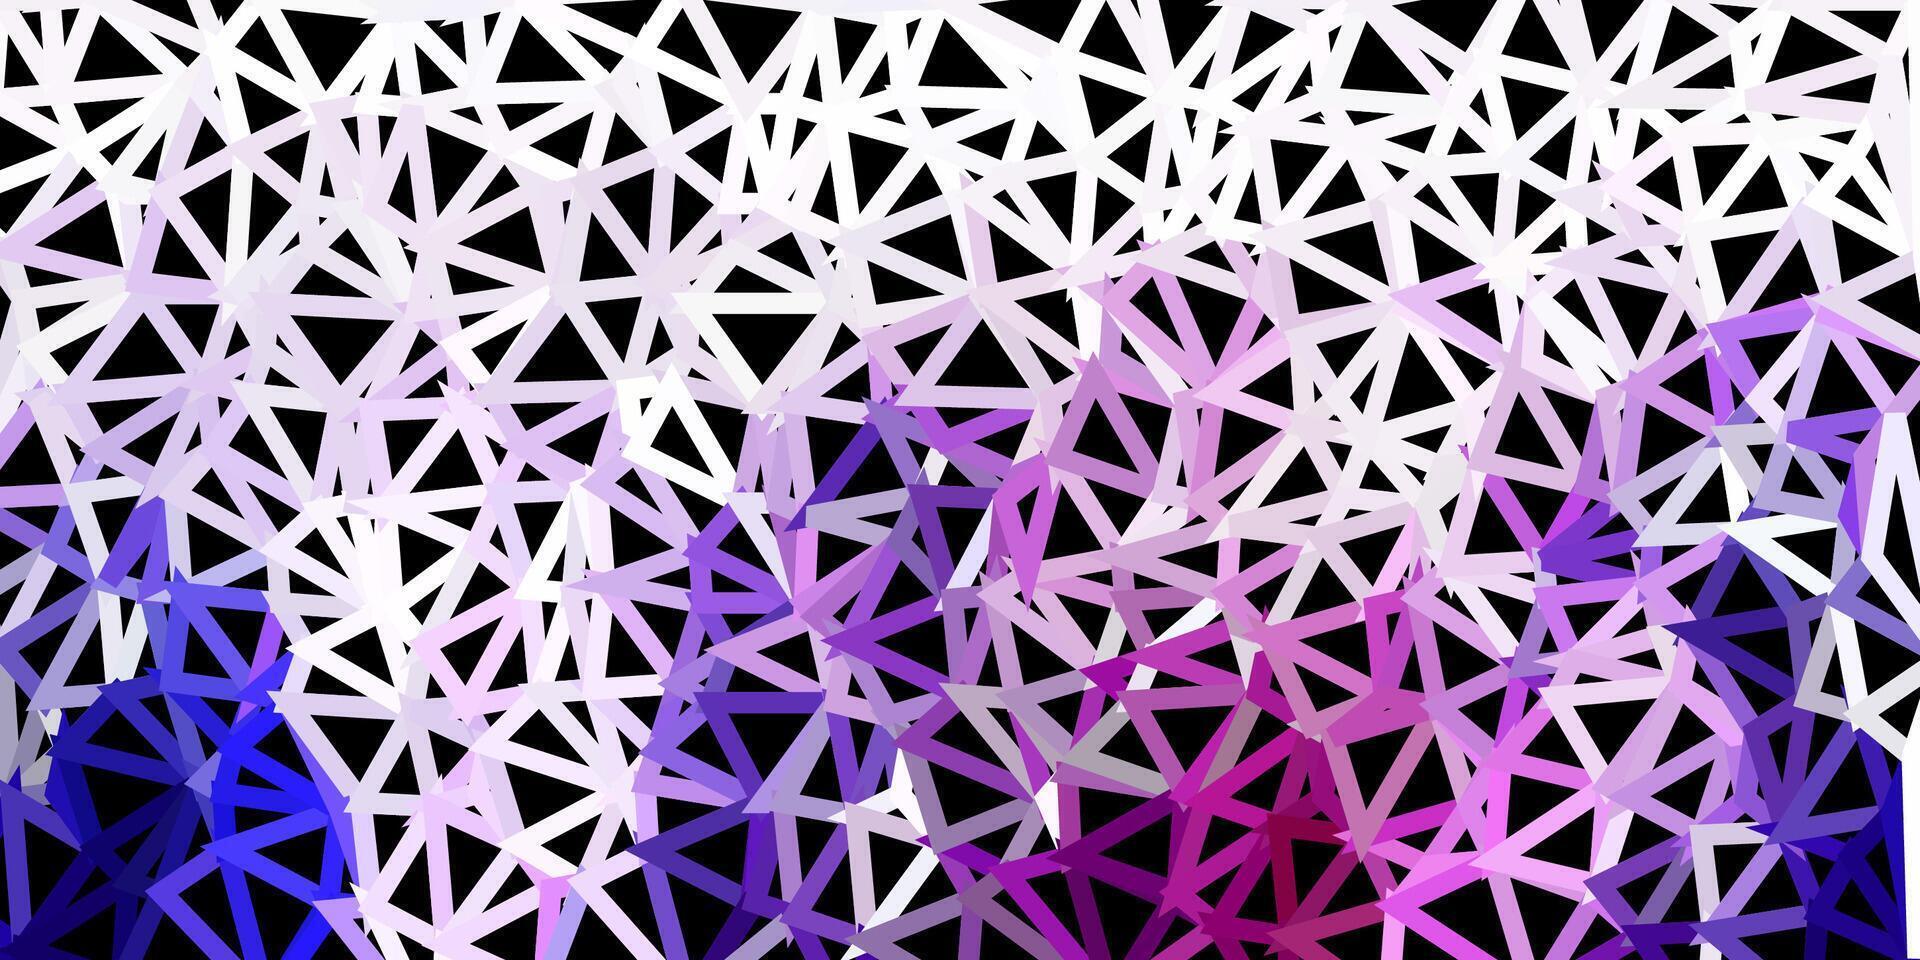 struttura del poligono gradiente vettoriale viola chiaro.